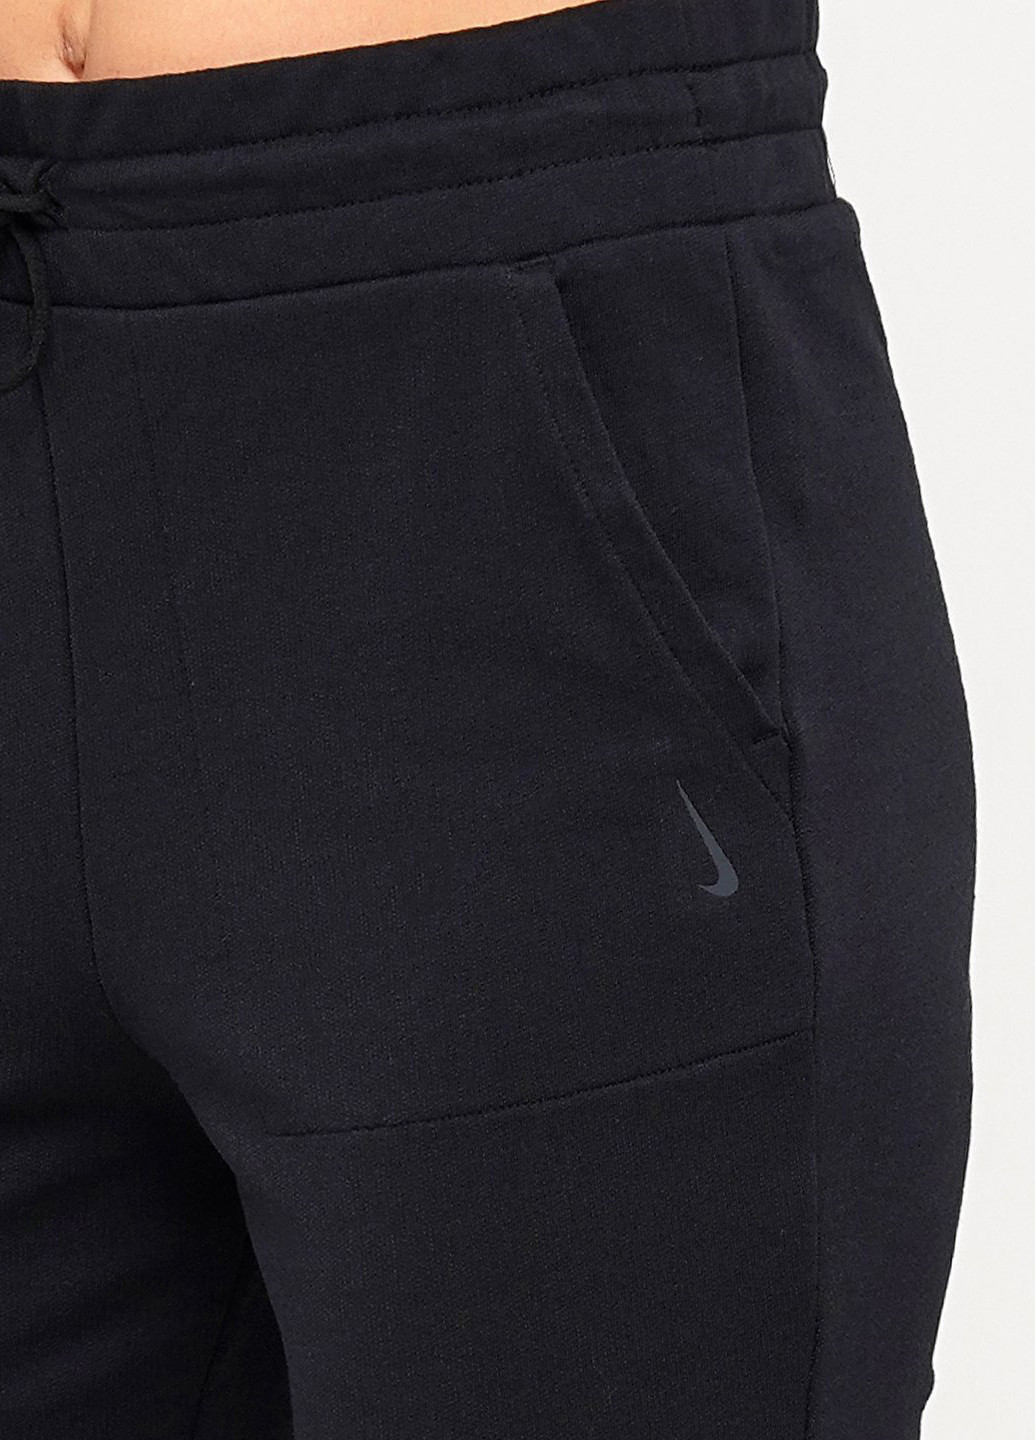 Черные спортивные демисезонные клеш брюки Nike